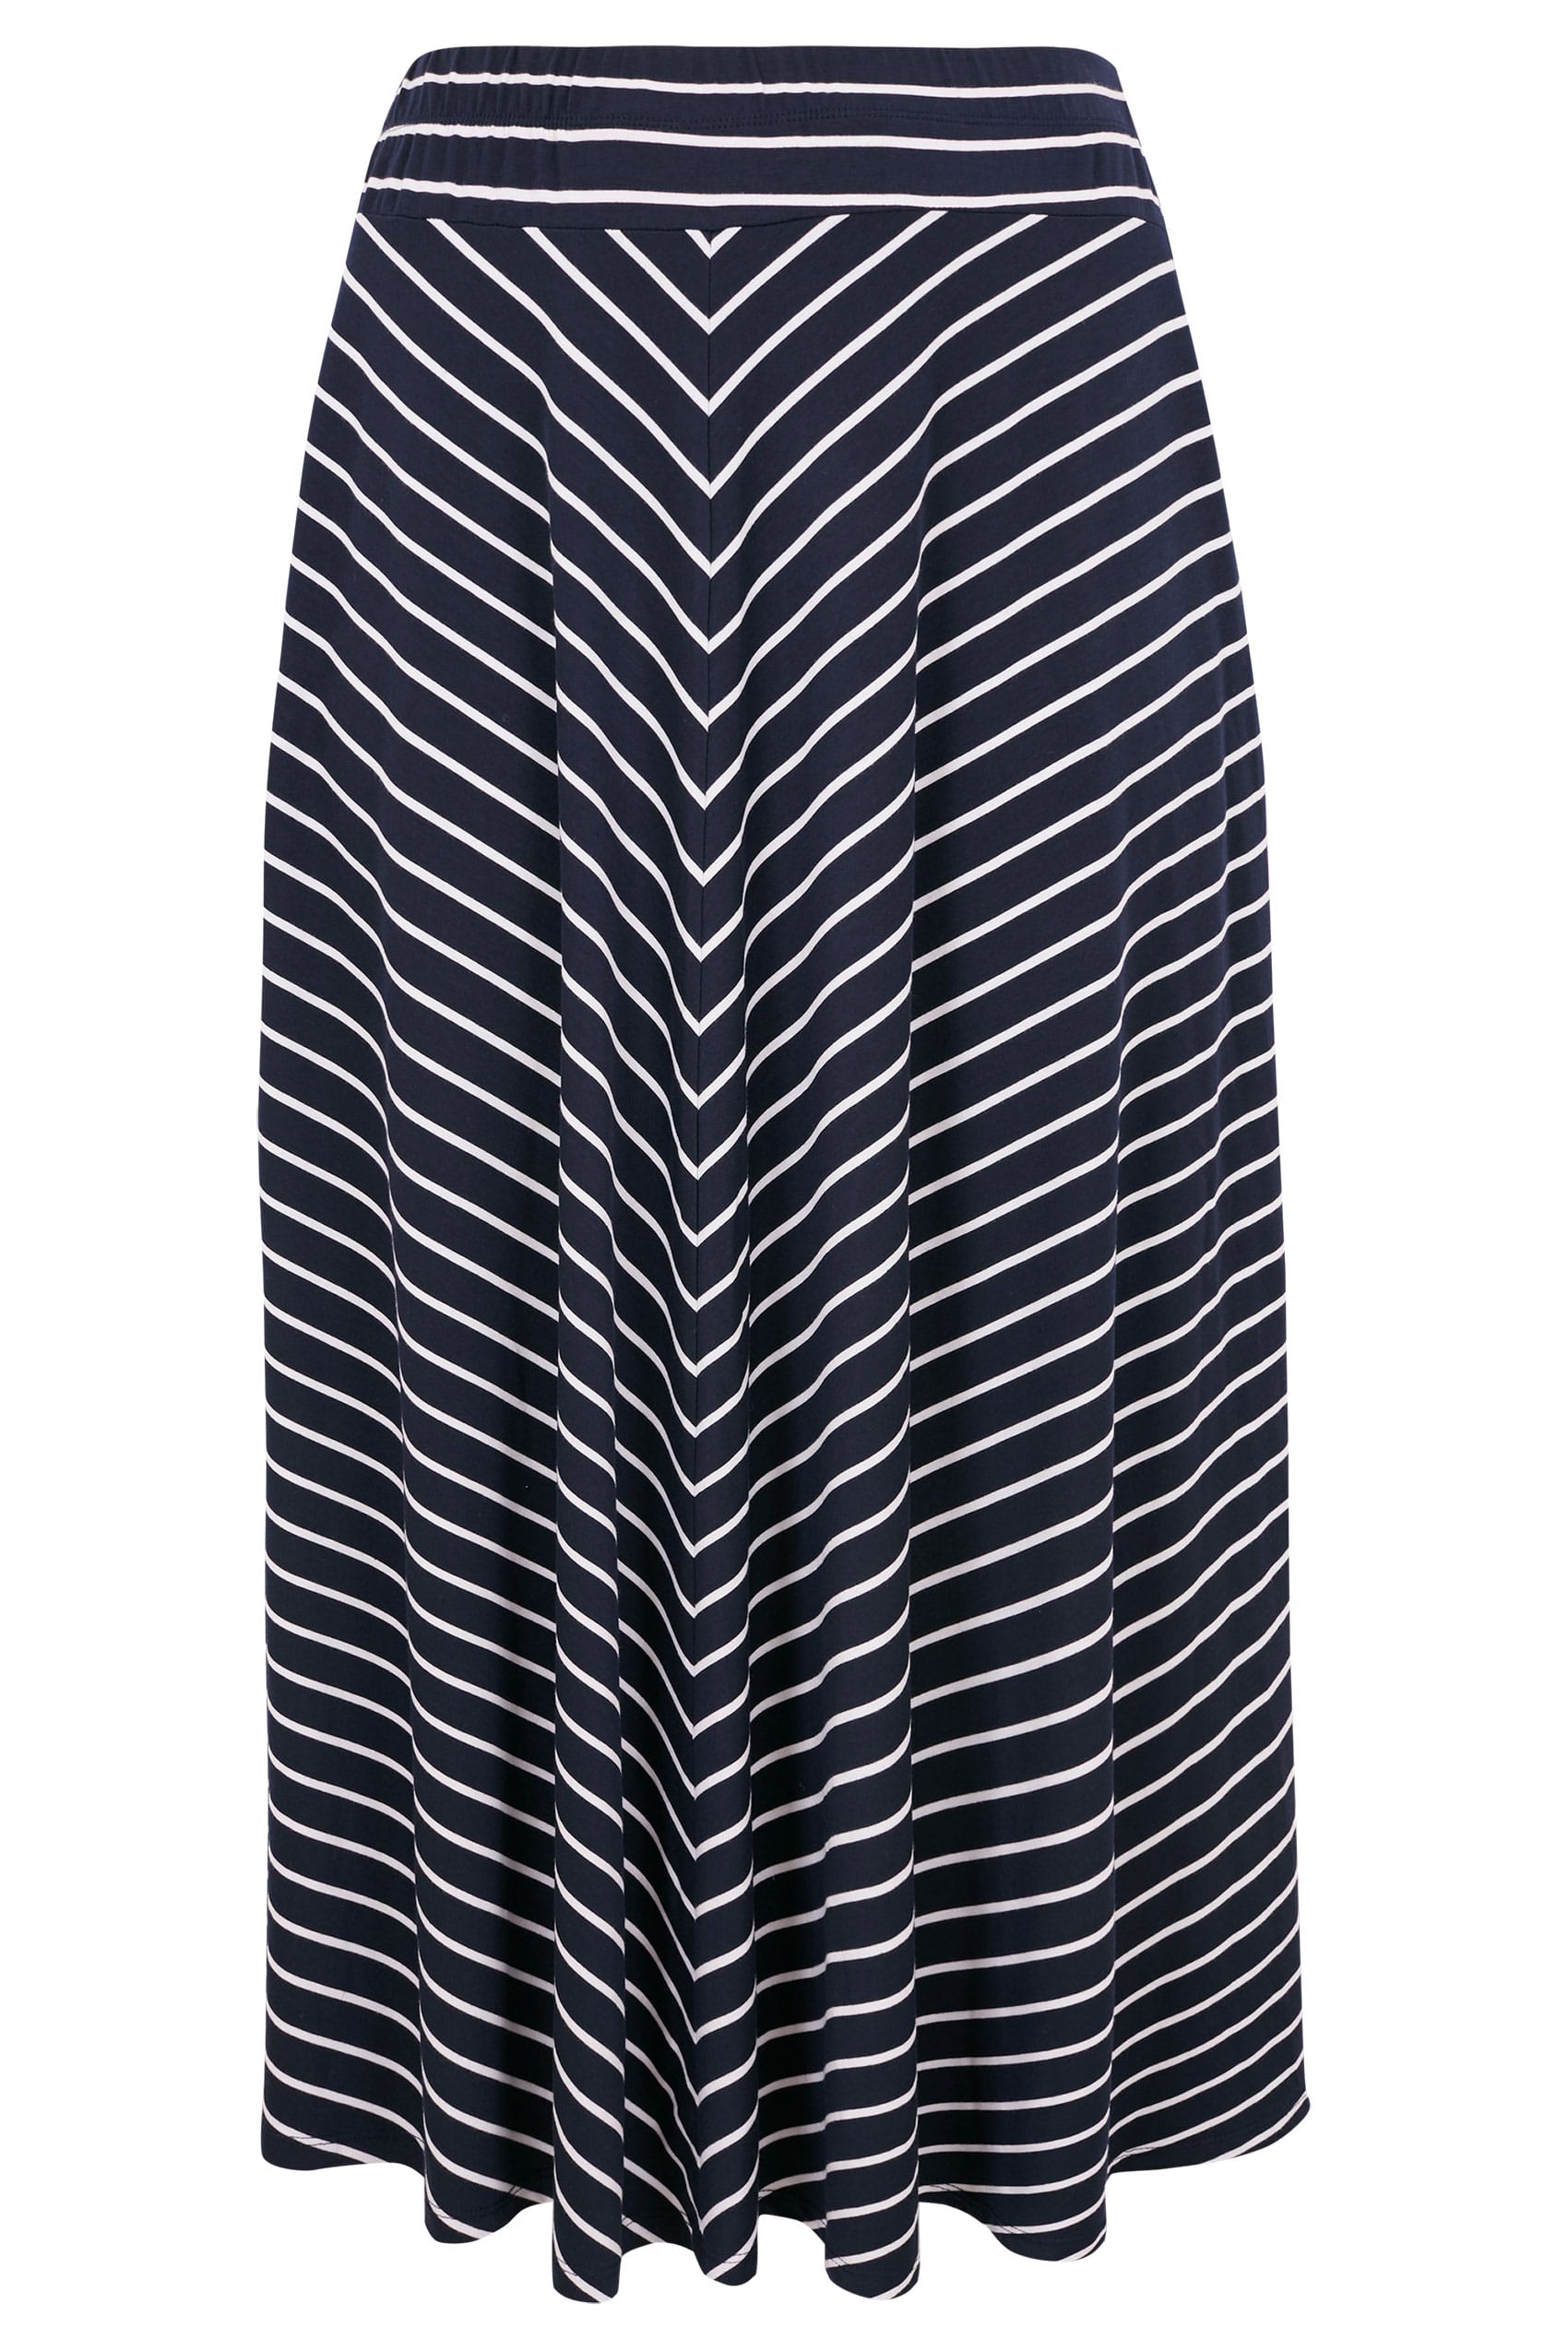 Navy & White Striped Maxi Skirt, Plus size 16 to 36